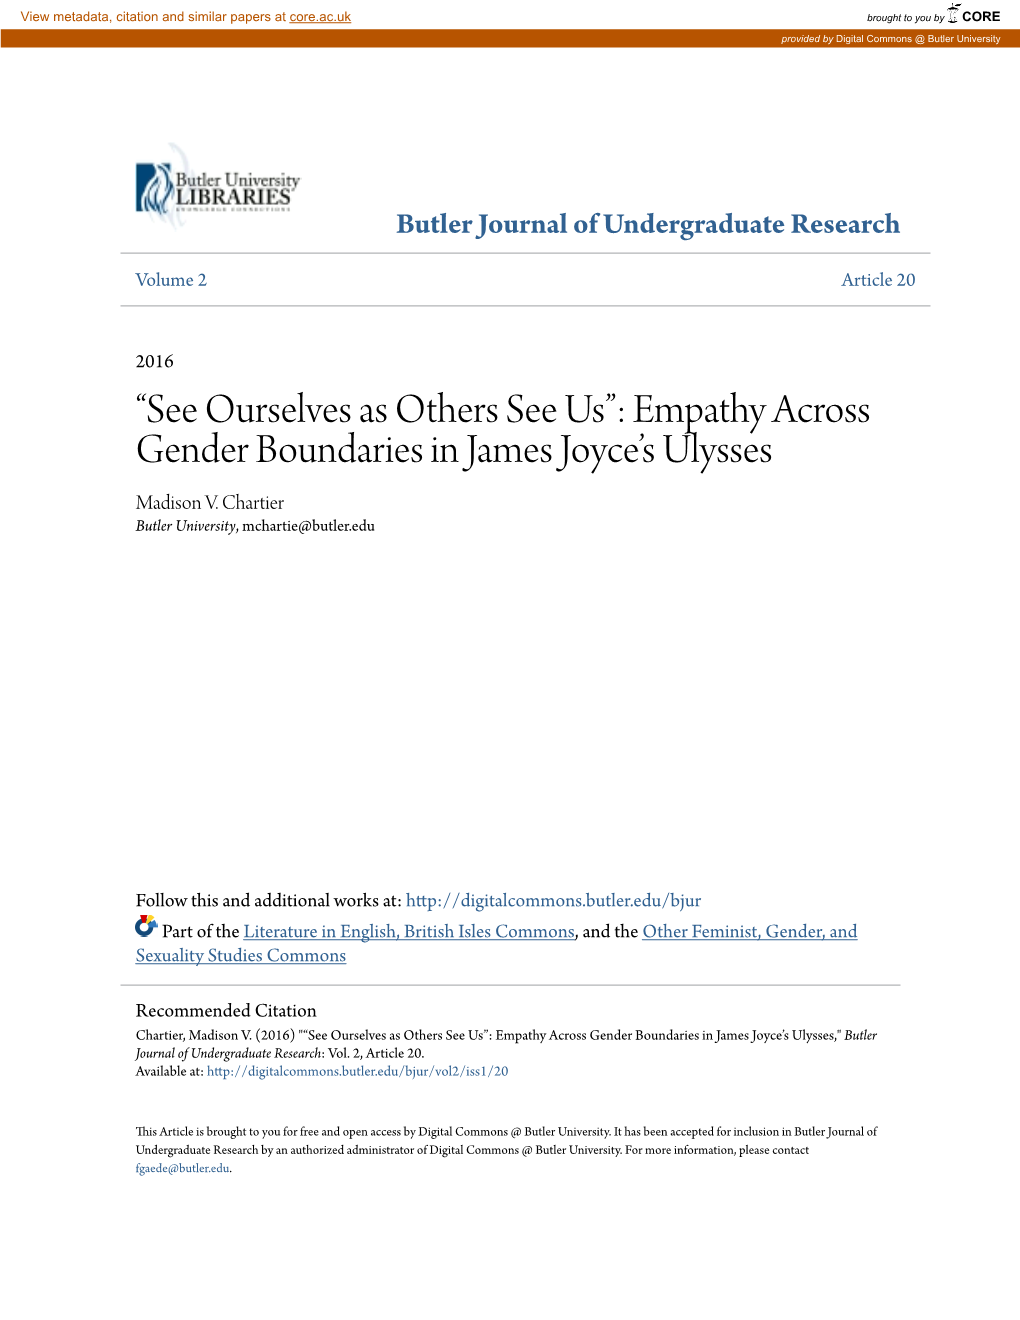 Empathy Across Gender Boundaries in James Joyce's Ulysses